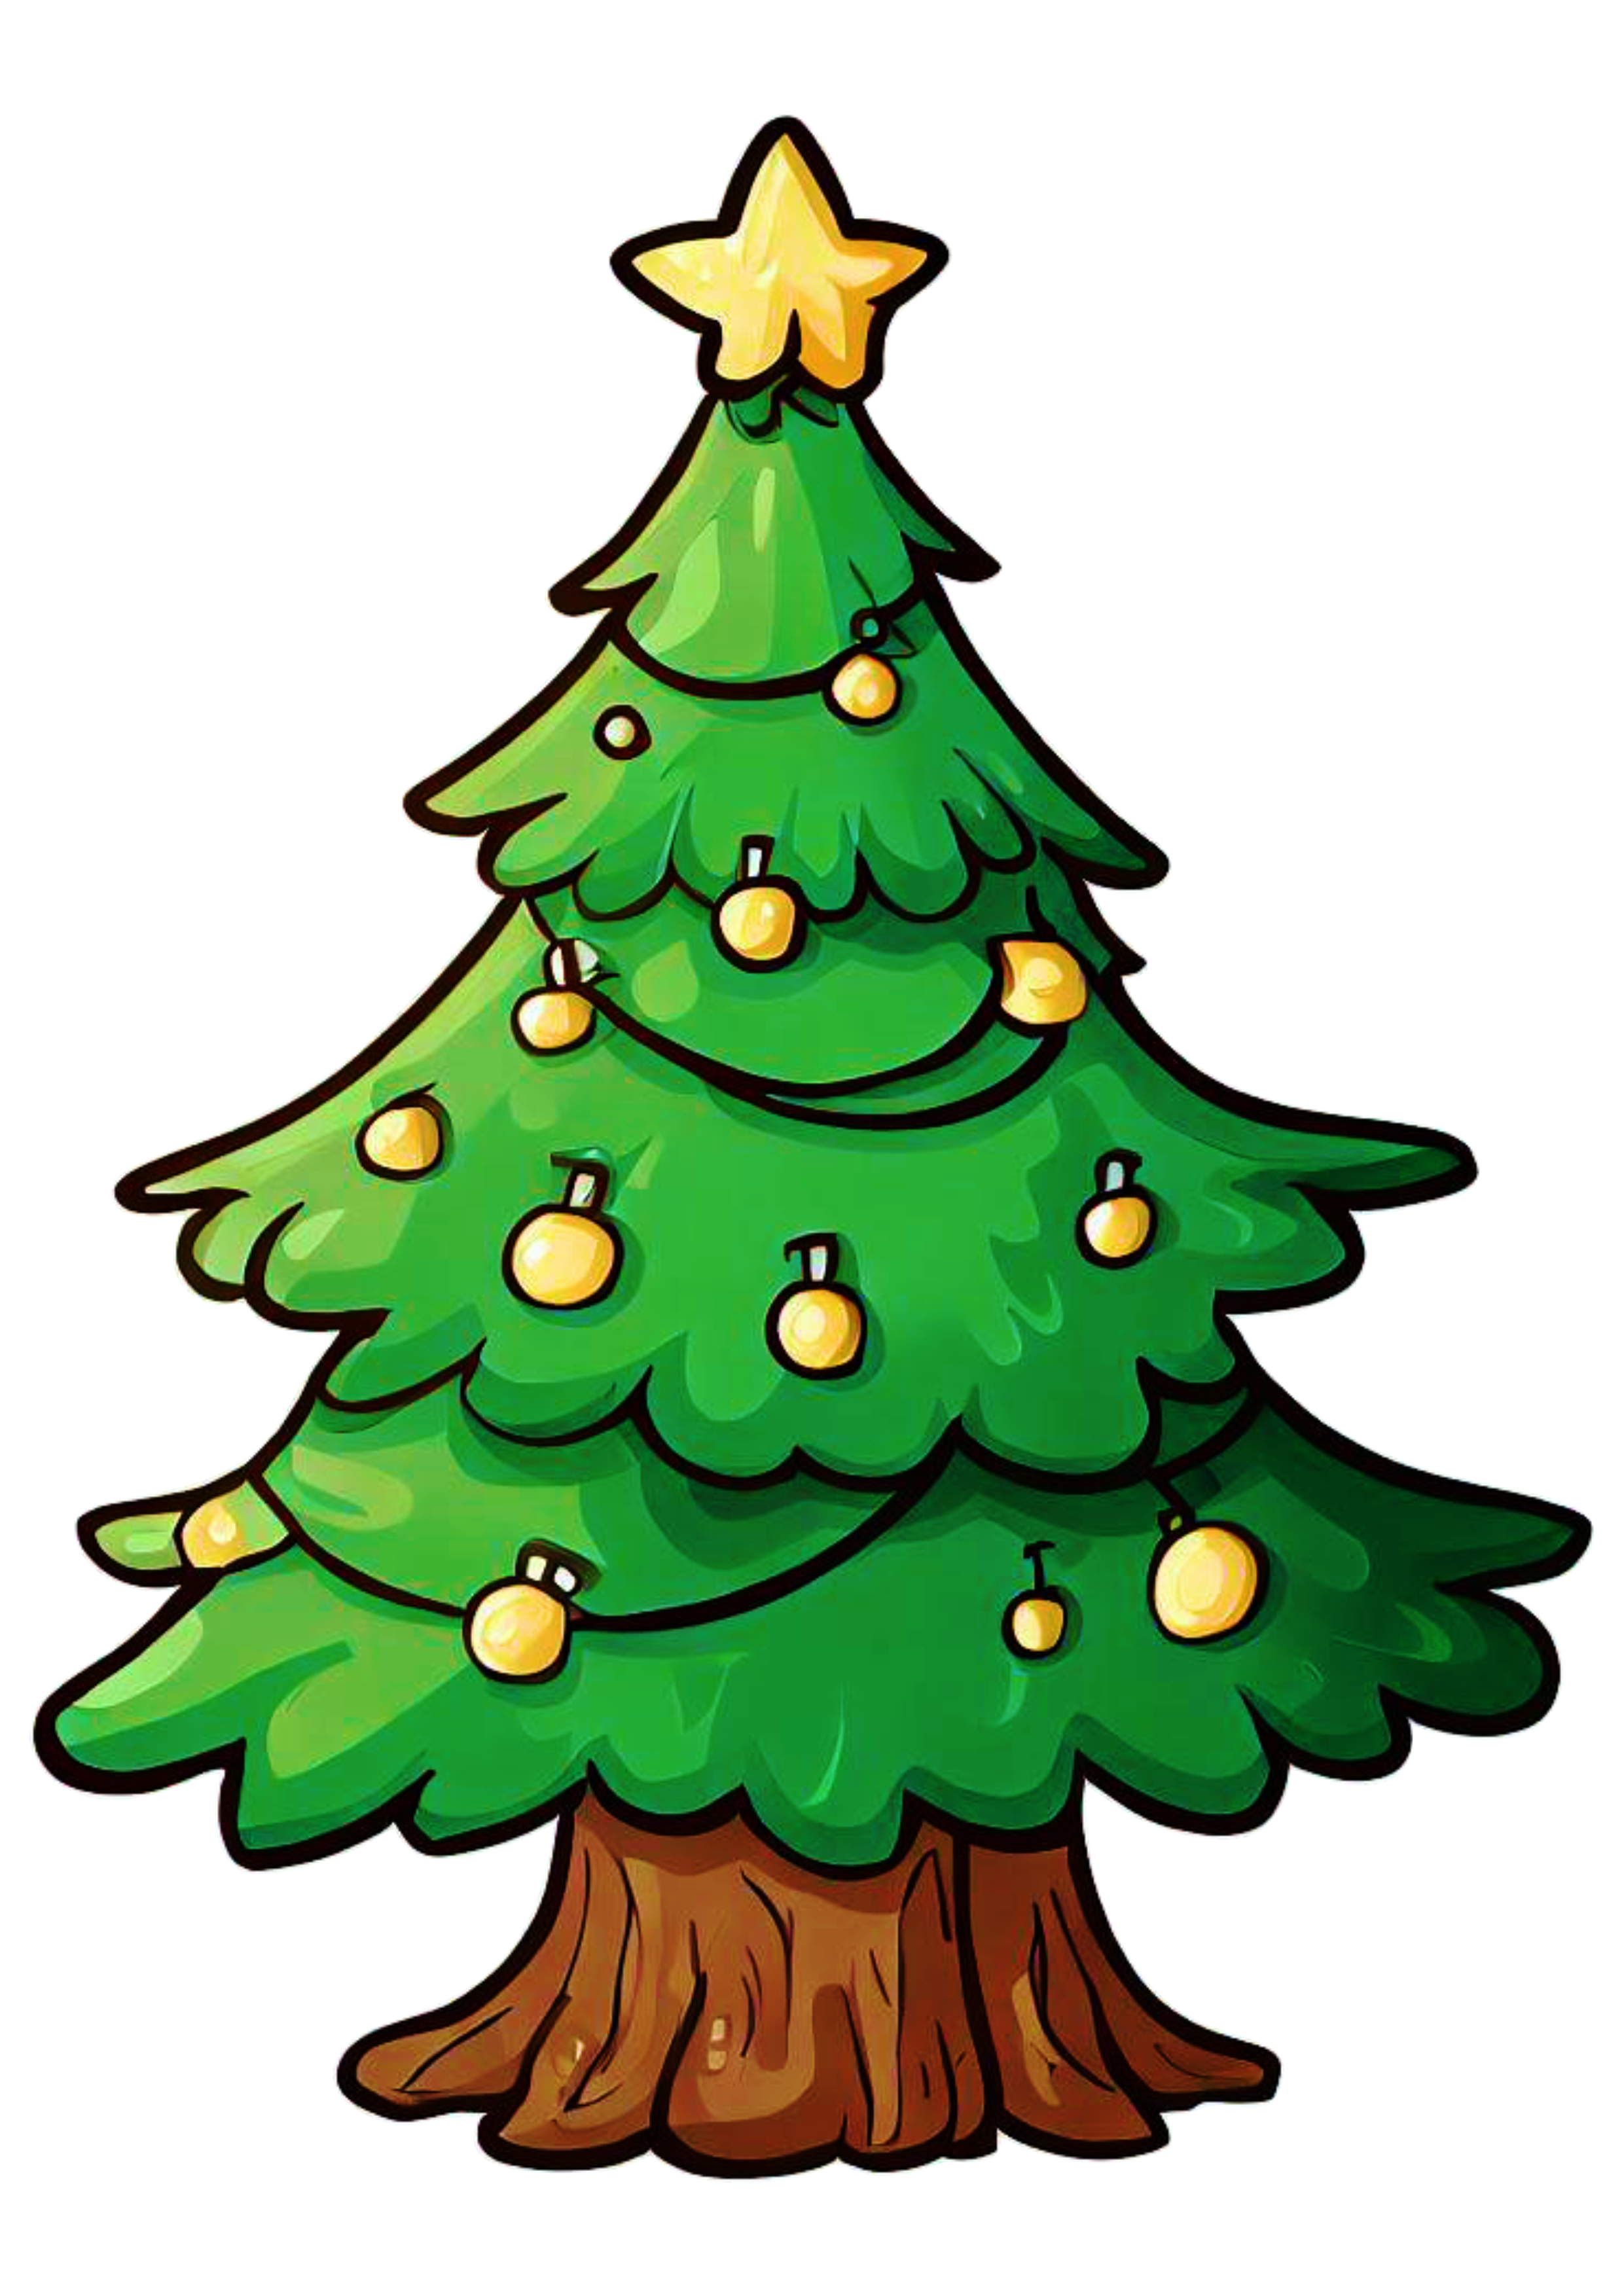 Árvore de natal desenho simples decoração natalina merry christmas ilustração artes gráficas vetor grátis estrelinha png